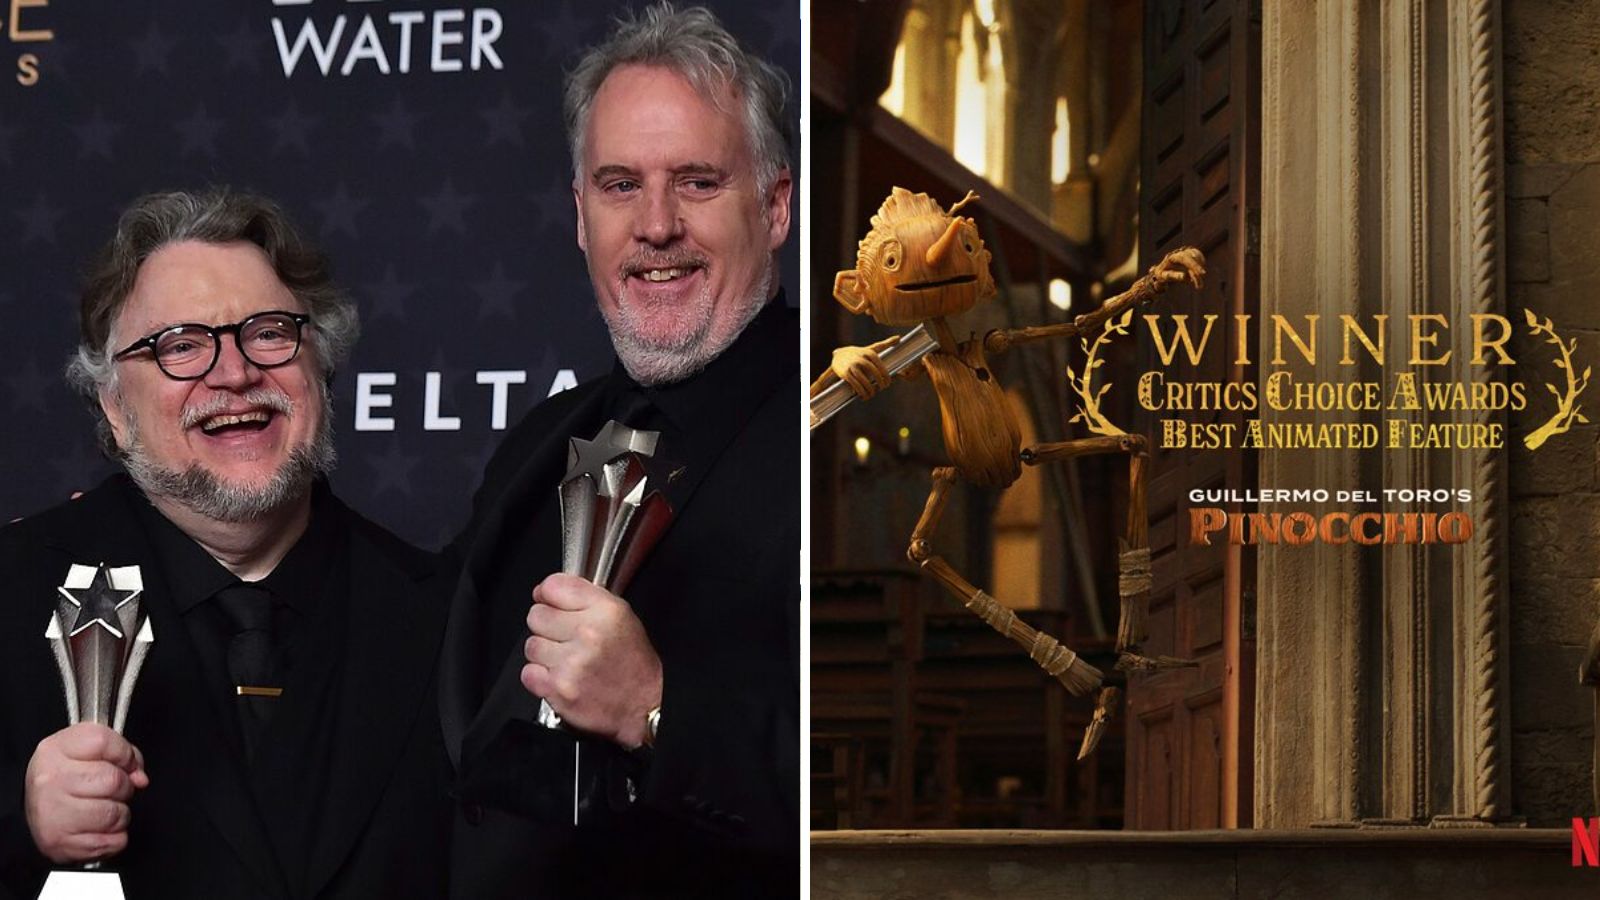 Pinocho, de Guillermo del Toro, gana mejor pelicula animada Critics Choice Awards